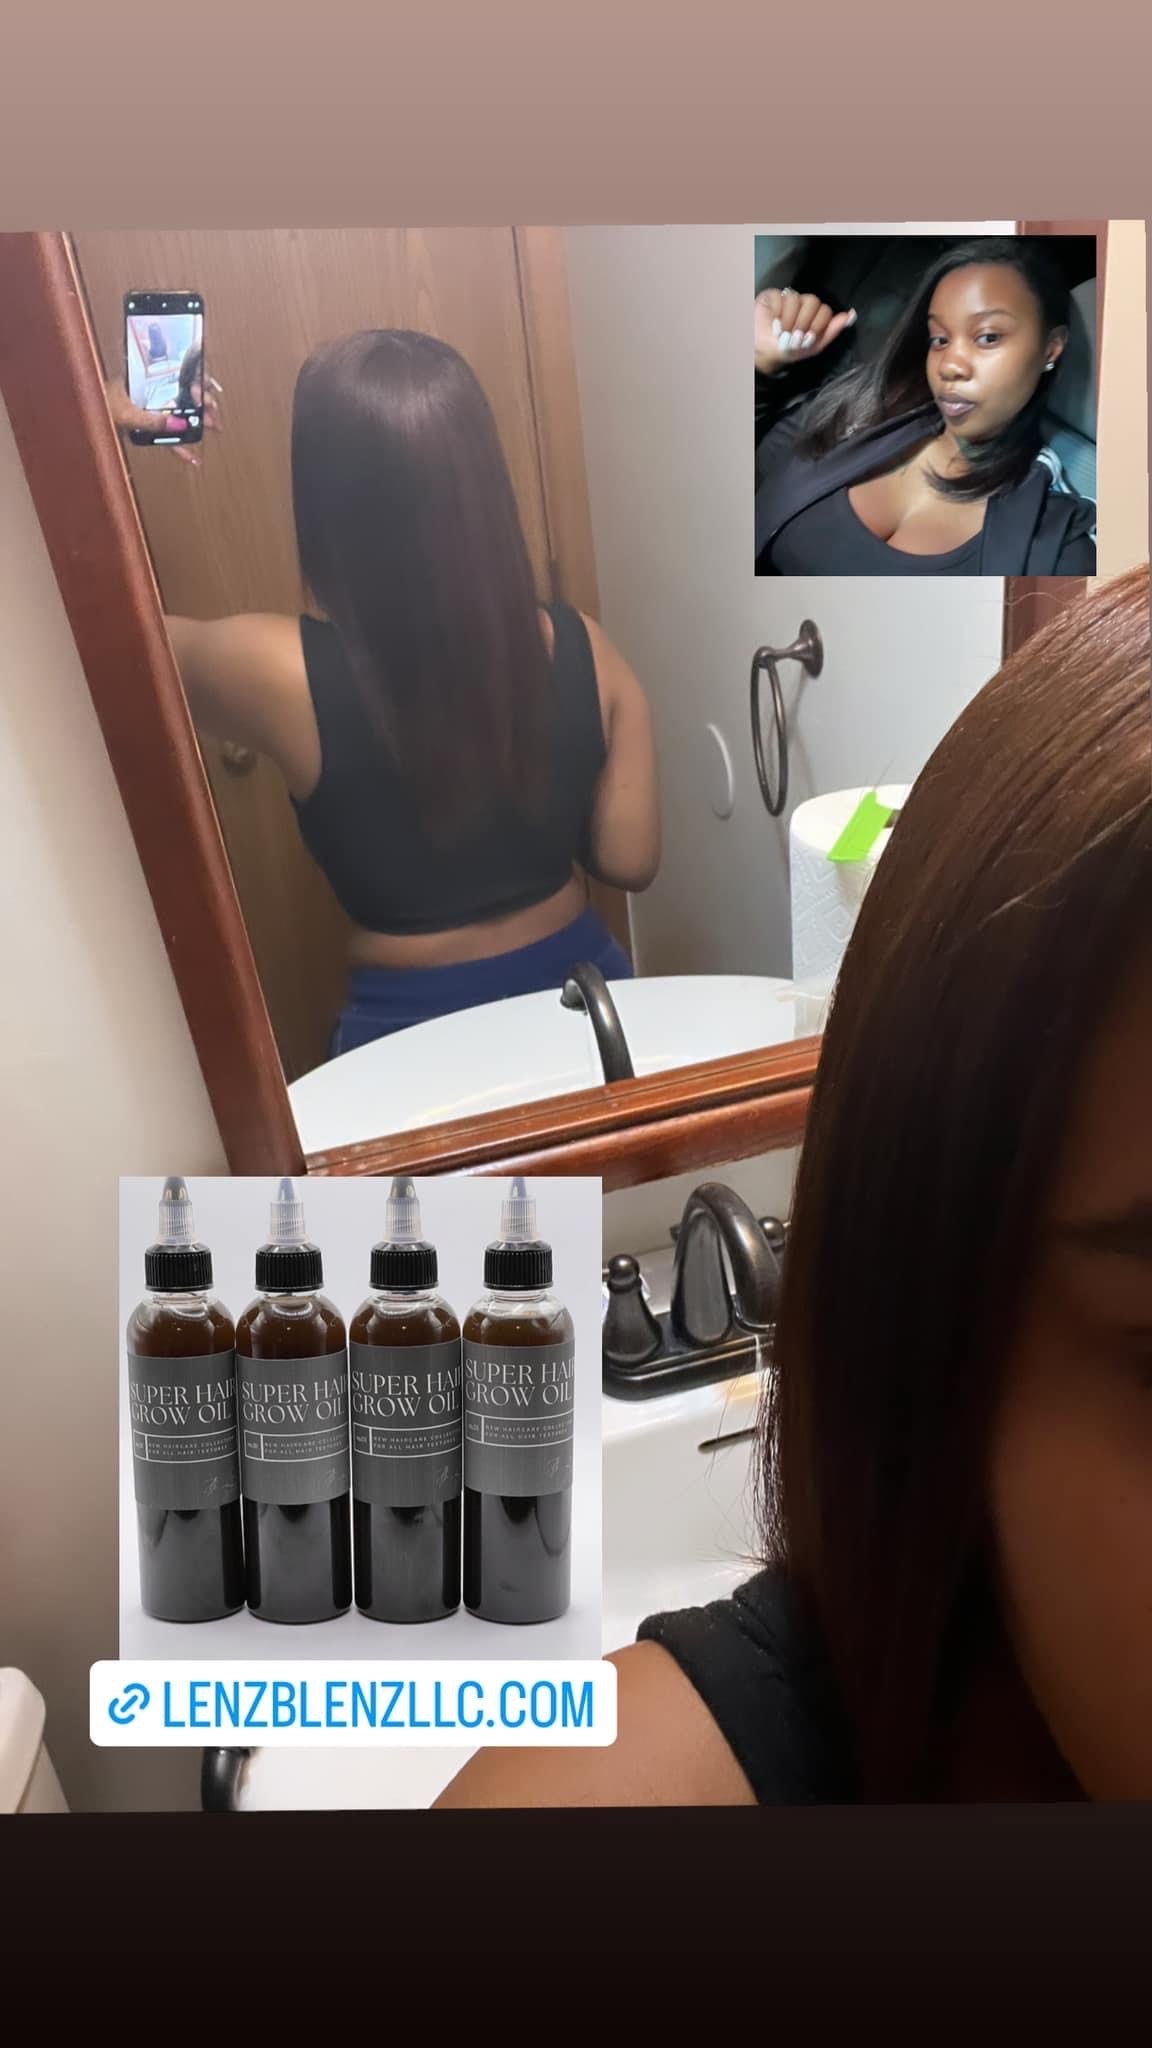 Super Grow Hair Oil